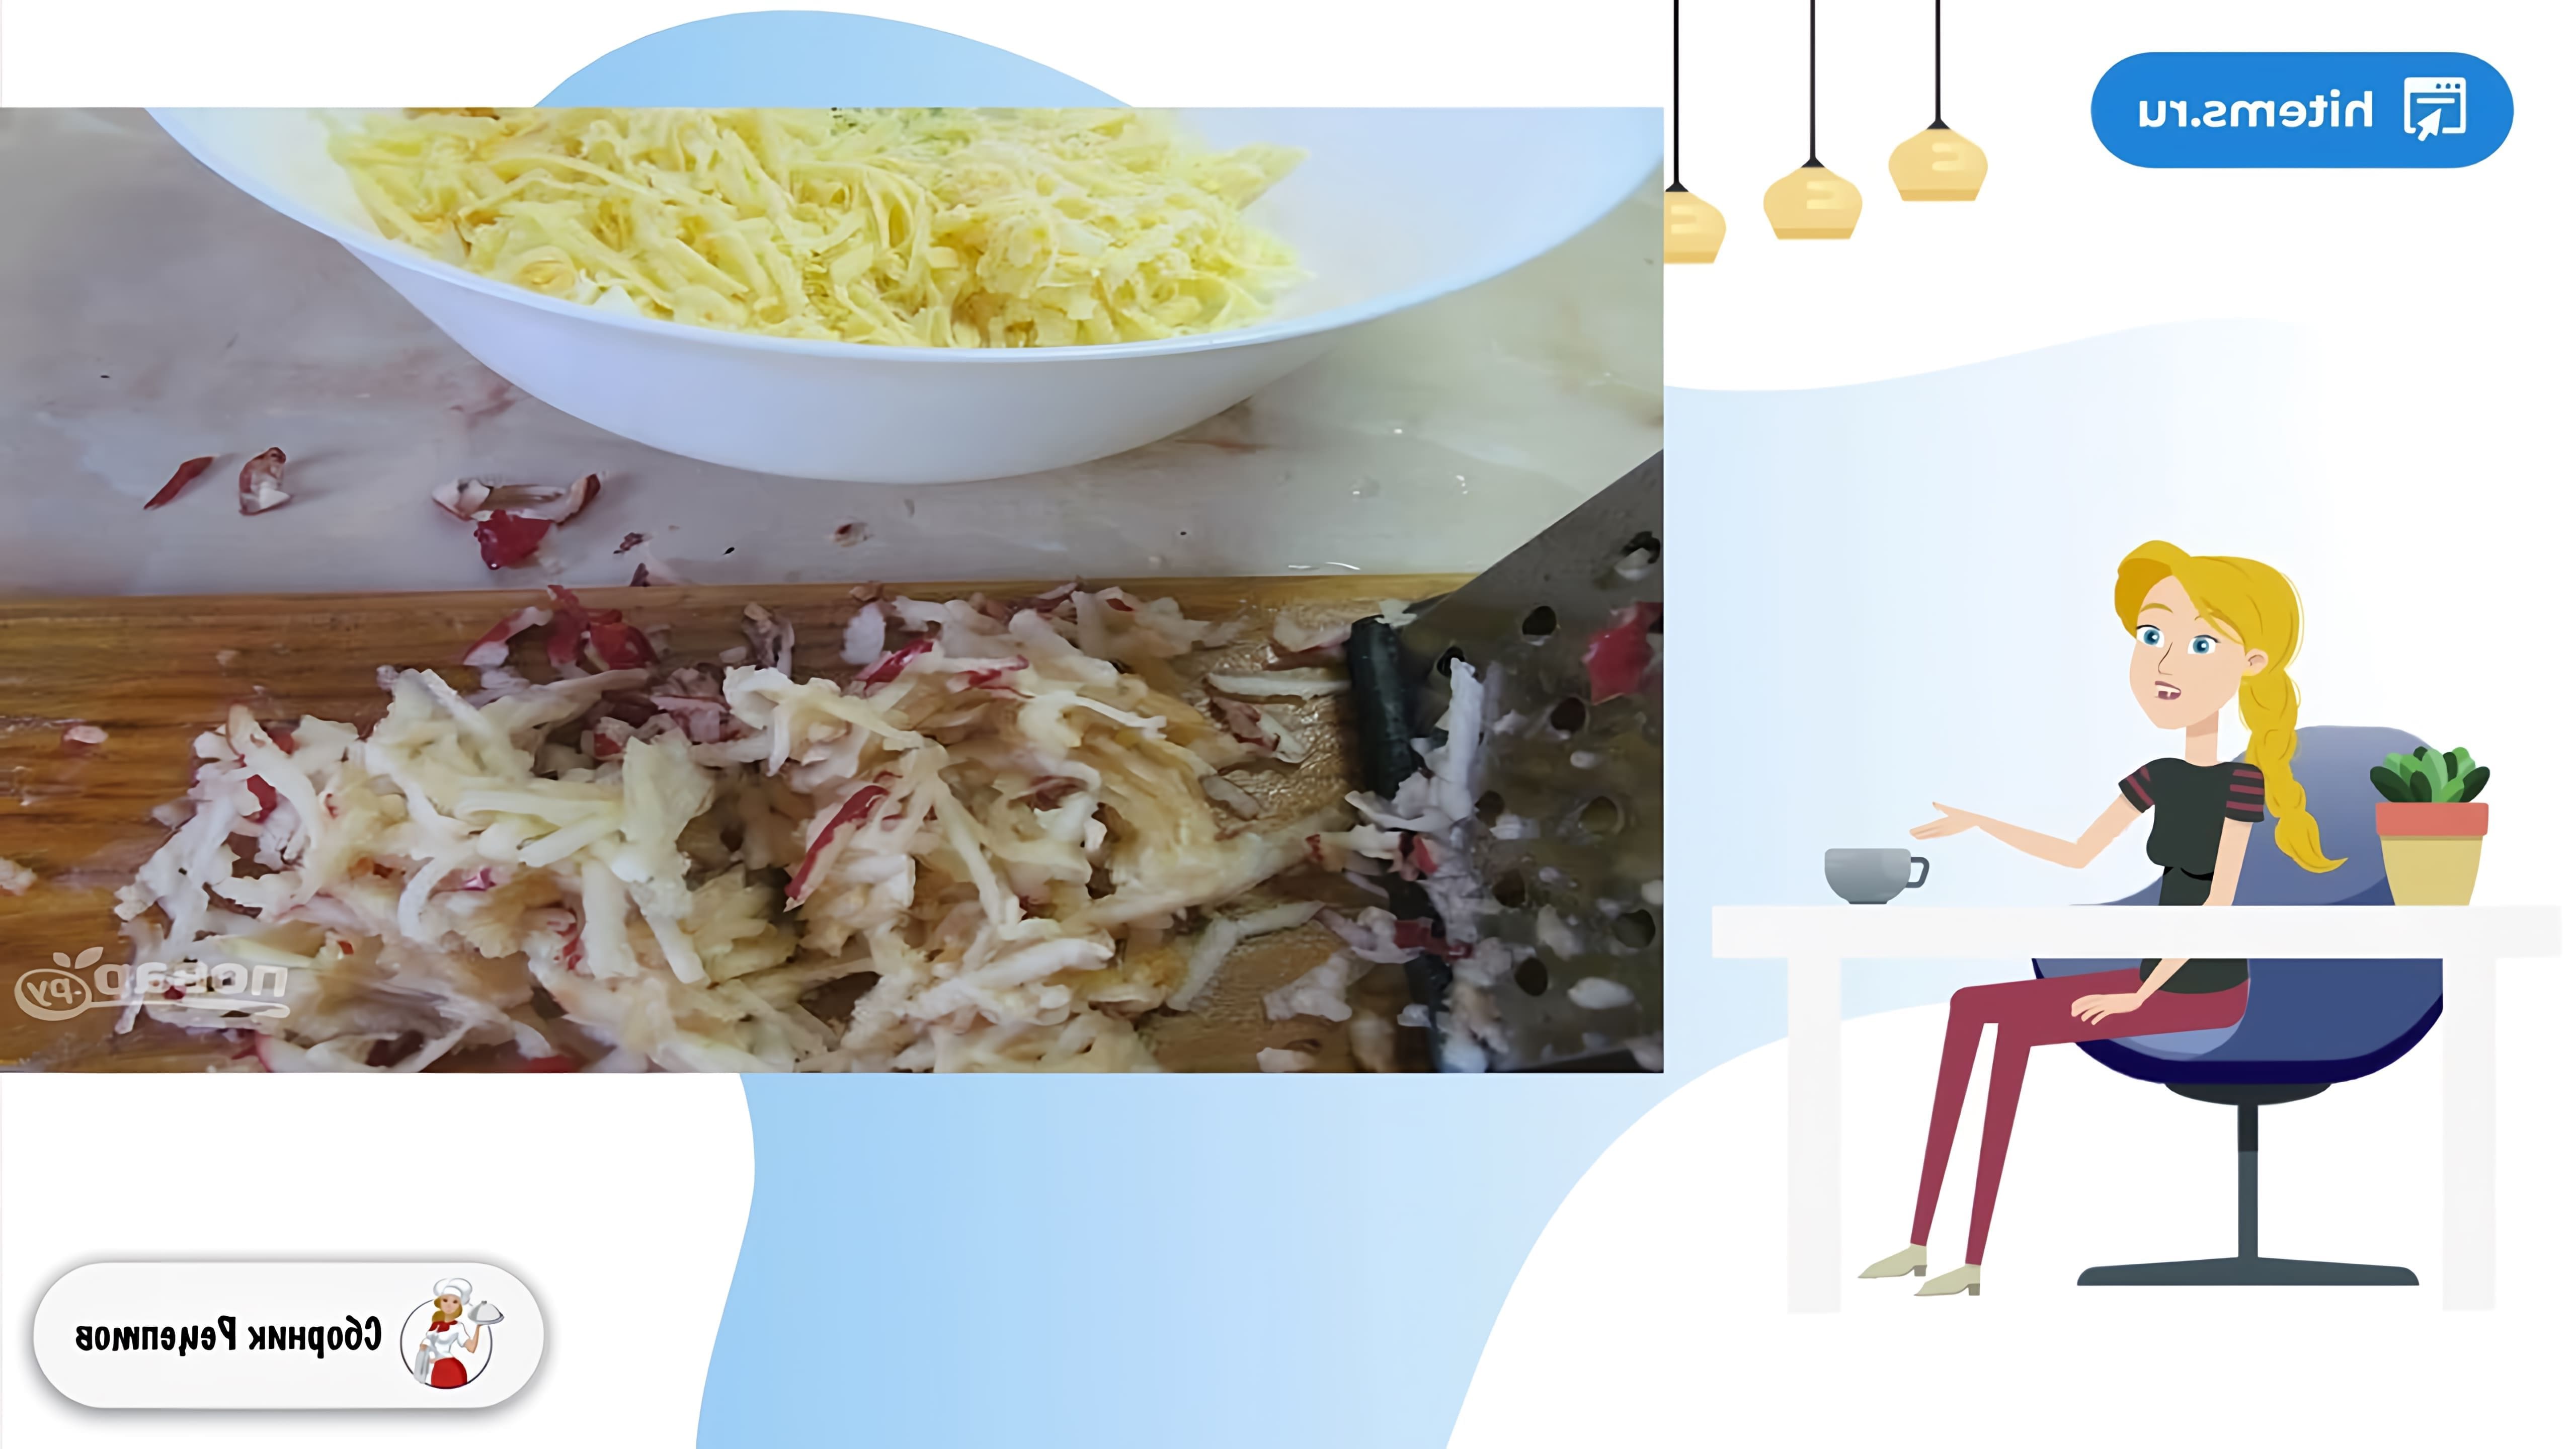 В этом видео демонстрируется рецепт приготовления салата "Воздушный"